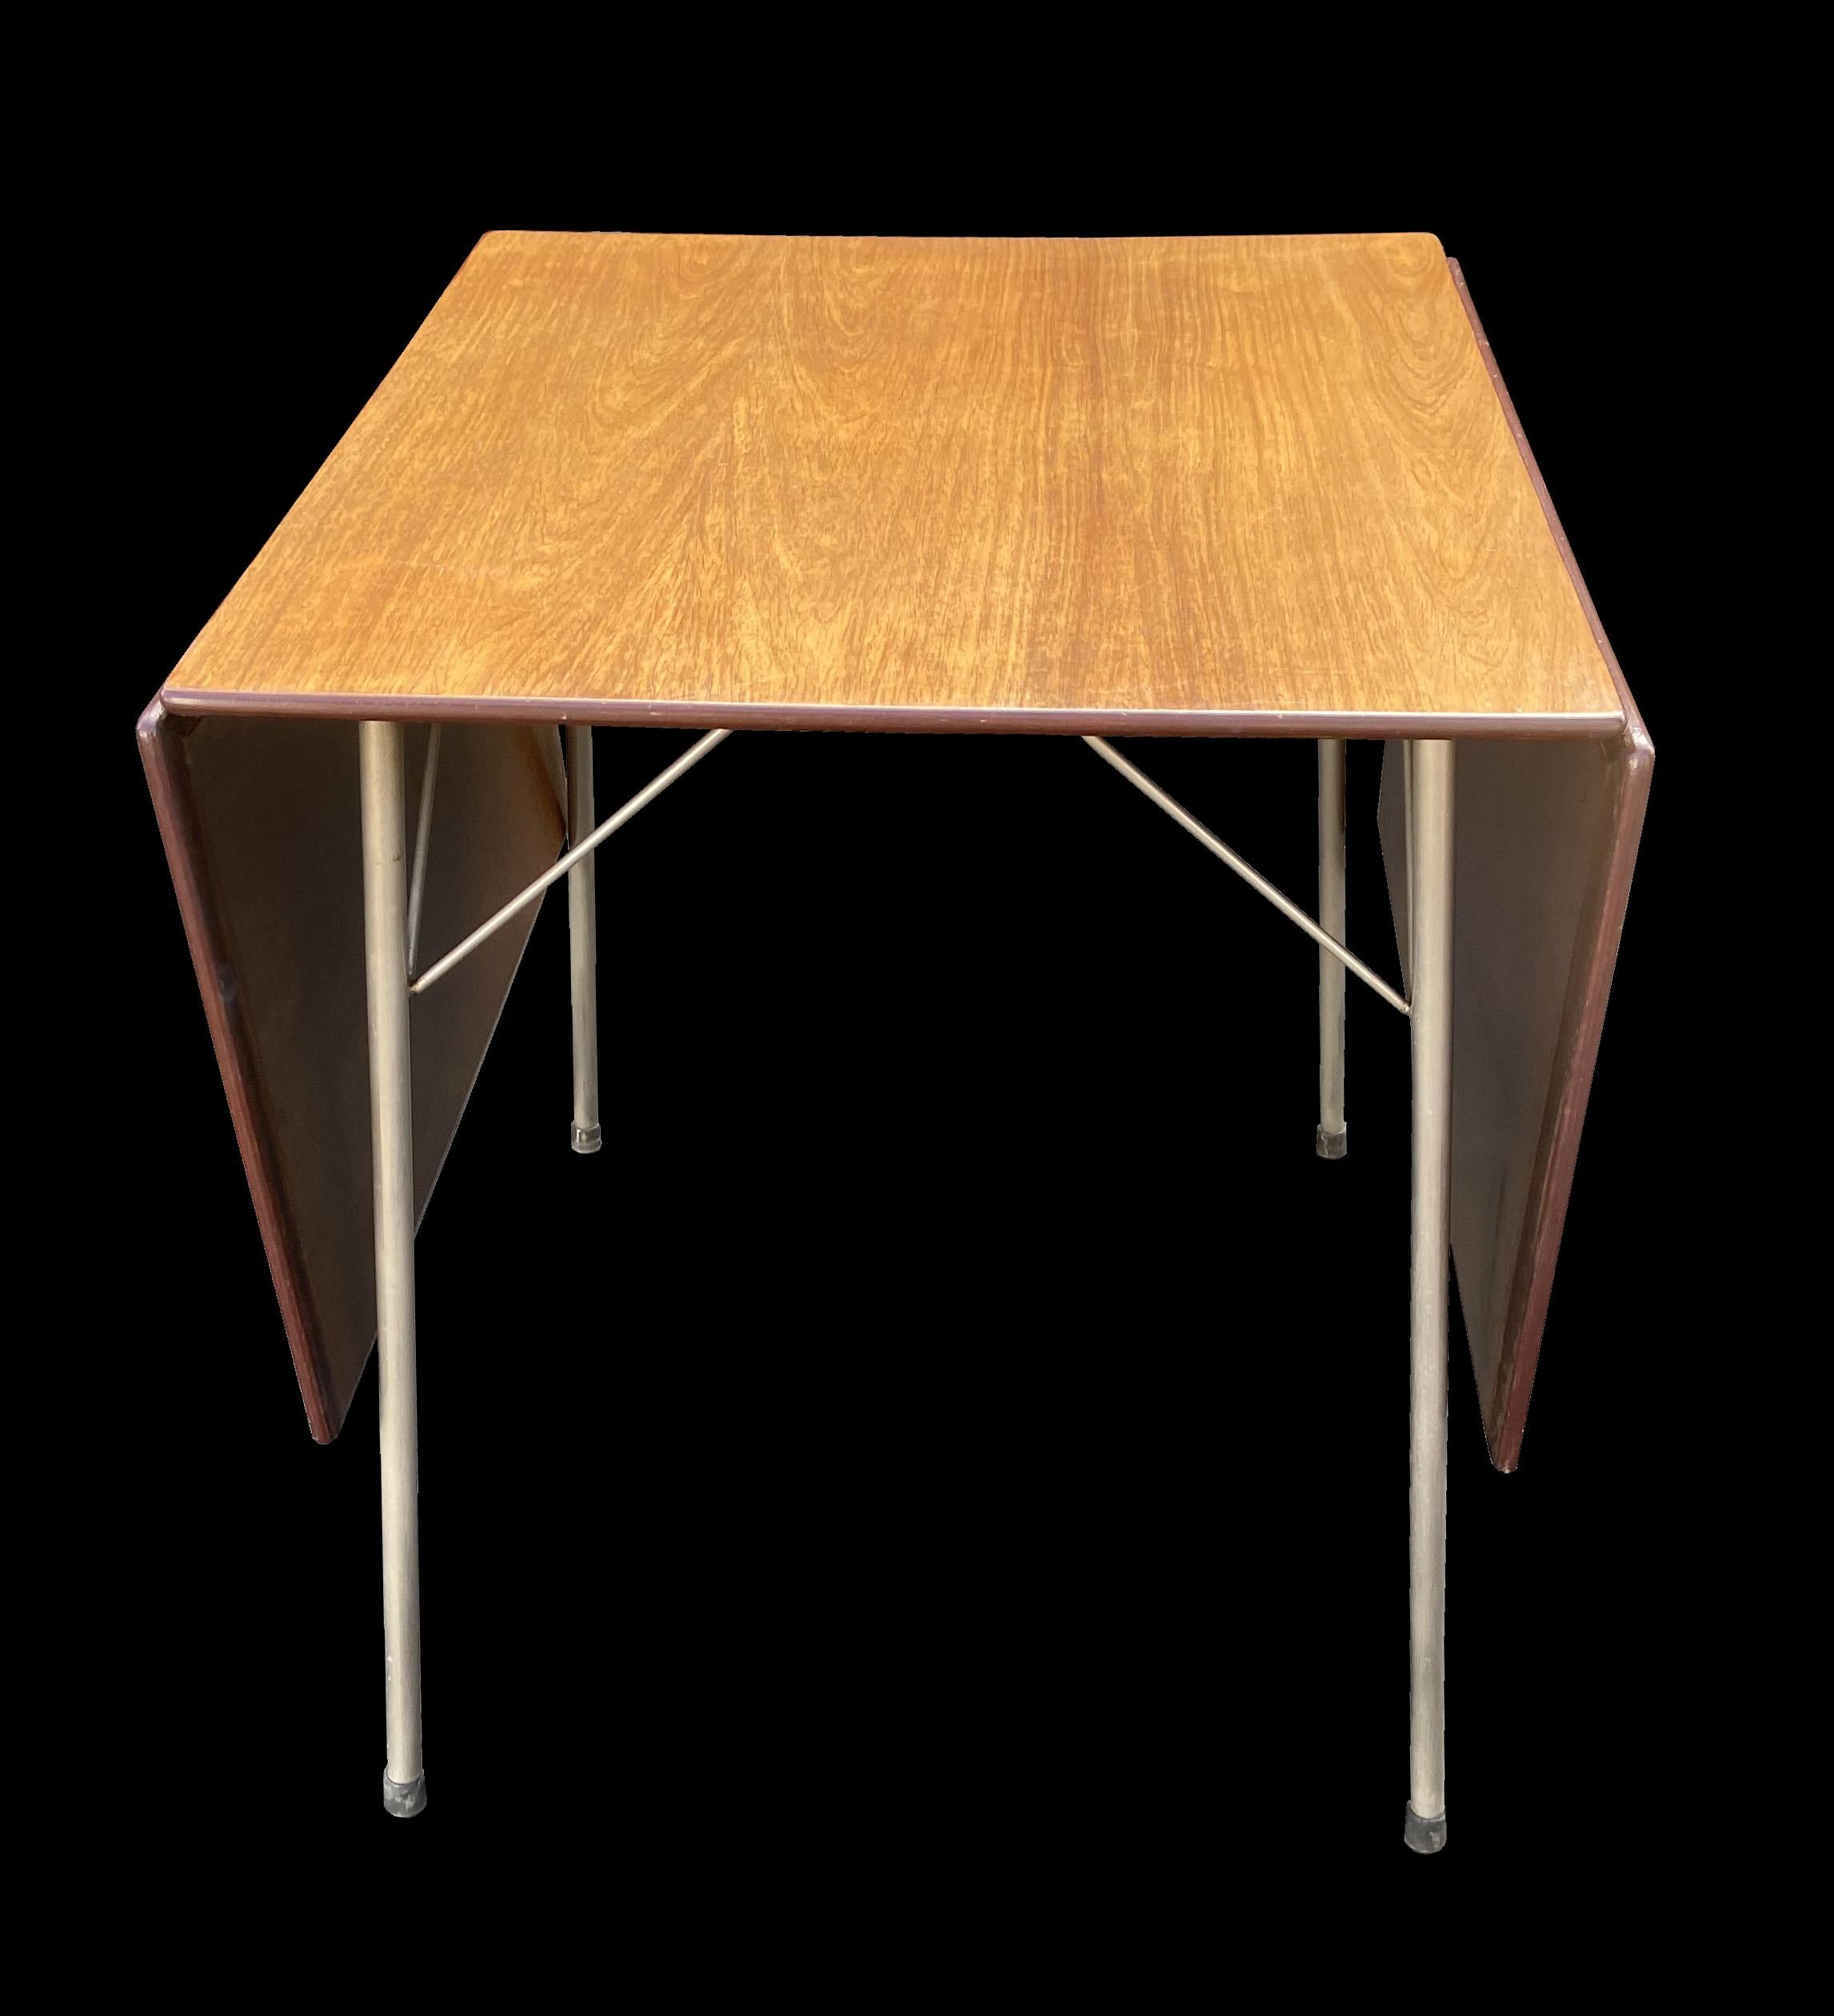 Dies ist ein ausgezeichnetes. unberührte ursprüngliche Beispiel dieser Drop Blatt Esstisch von Arne Jacobsen entworfen, hat die Platte eine wunderbare Patina, und das Rosenholz hat schön und gleichmäßig zu einem wirklich schönen weichen Farbe